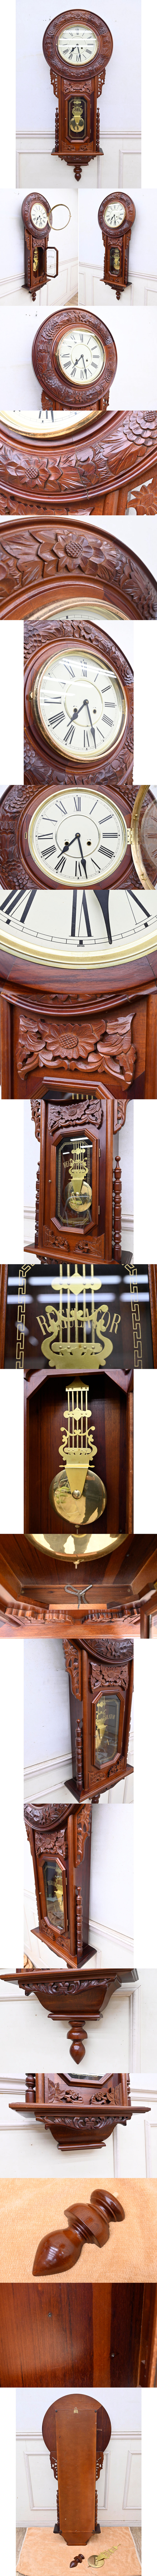 即納可能ET261 大型 特大 アンティーク レトロ スイス製 木製 見事な彫刻 機械式 アナログ ゼンマイ式 掛時計 柱時計 壁掛け時計 振り子時計 アナログ